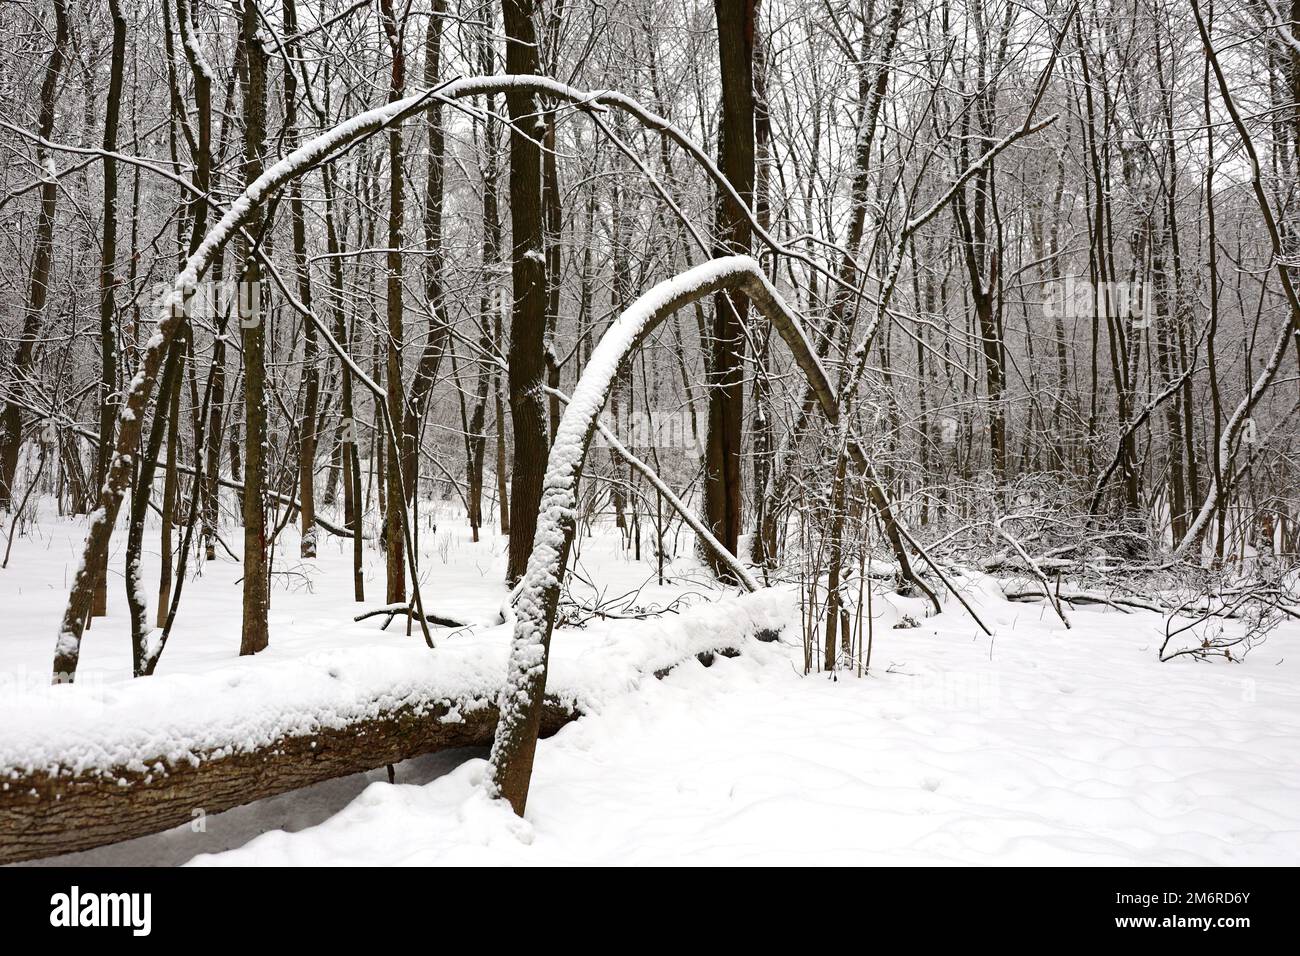 Forêt en hiver, troncs et branches d'arbres couverts de neige. La nature après les chutes de neige, temps froid Banque D'Images